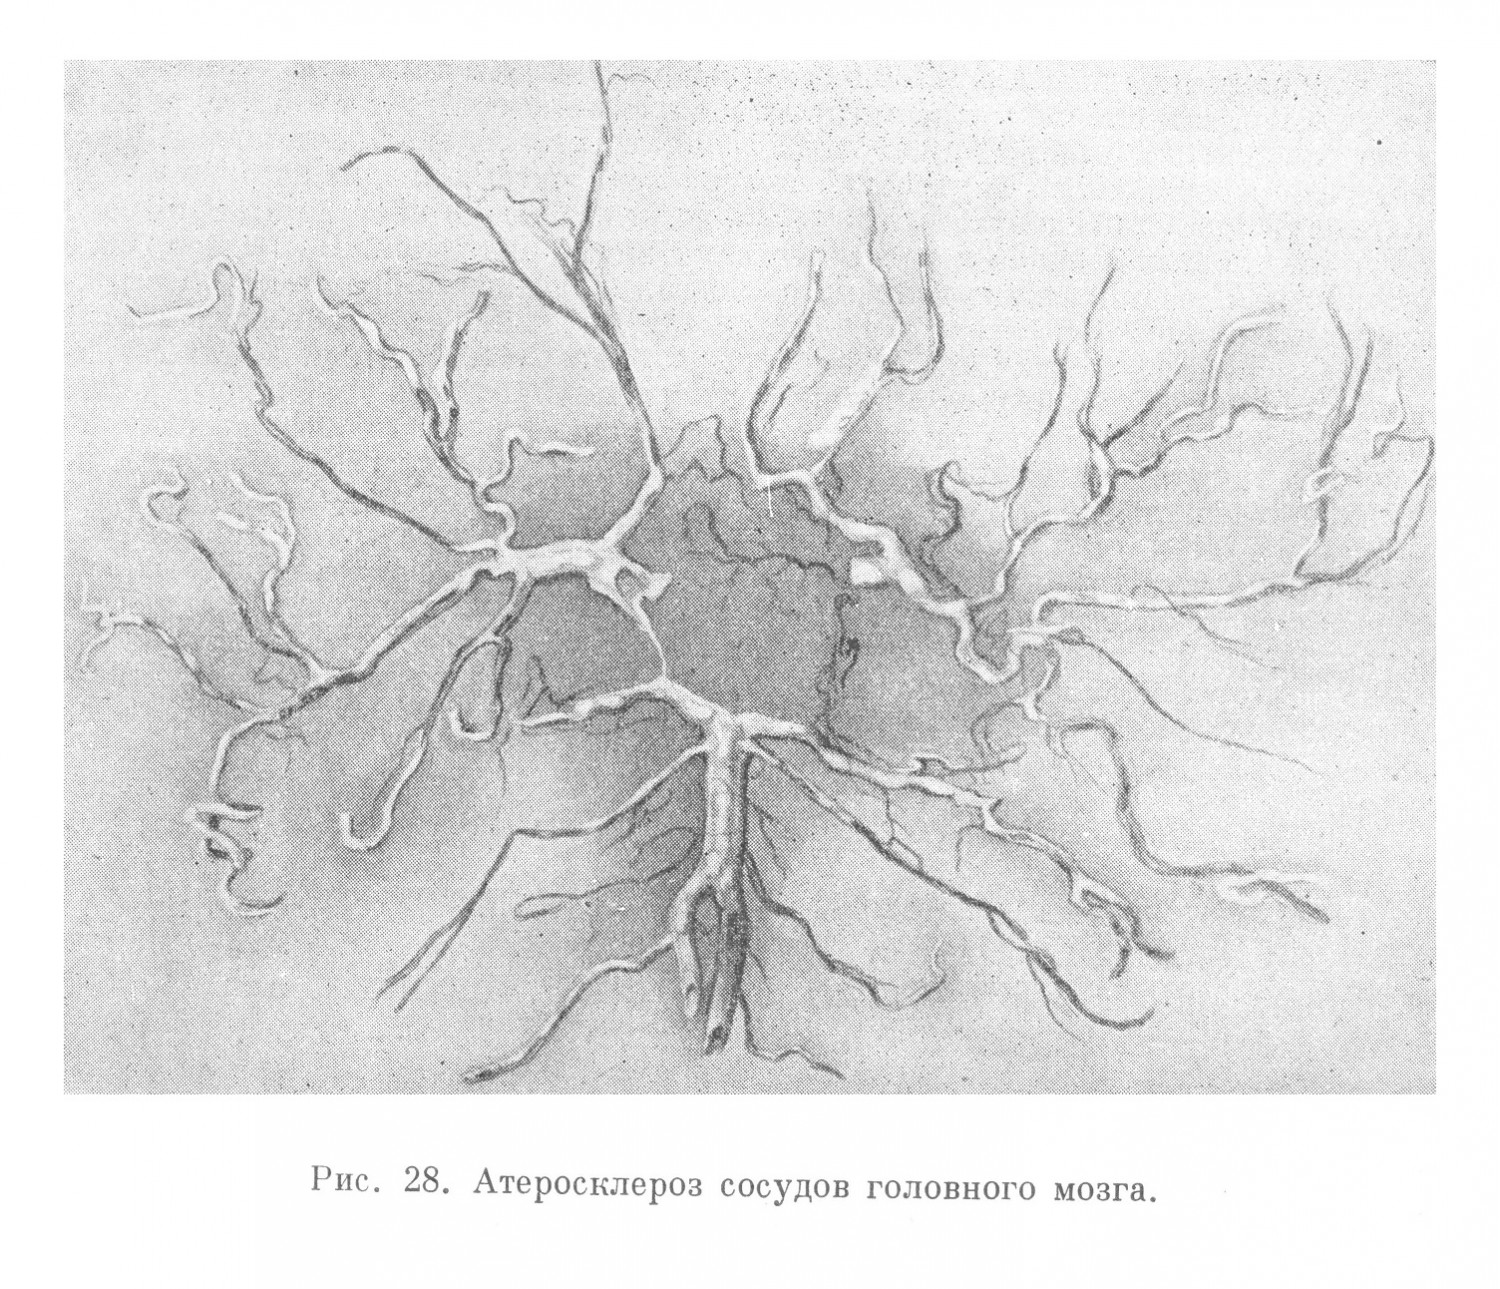 Атеросклероз сосудов головного мозга